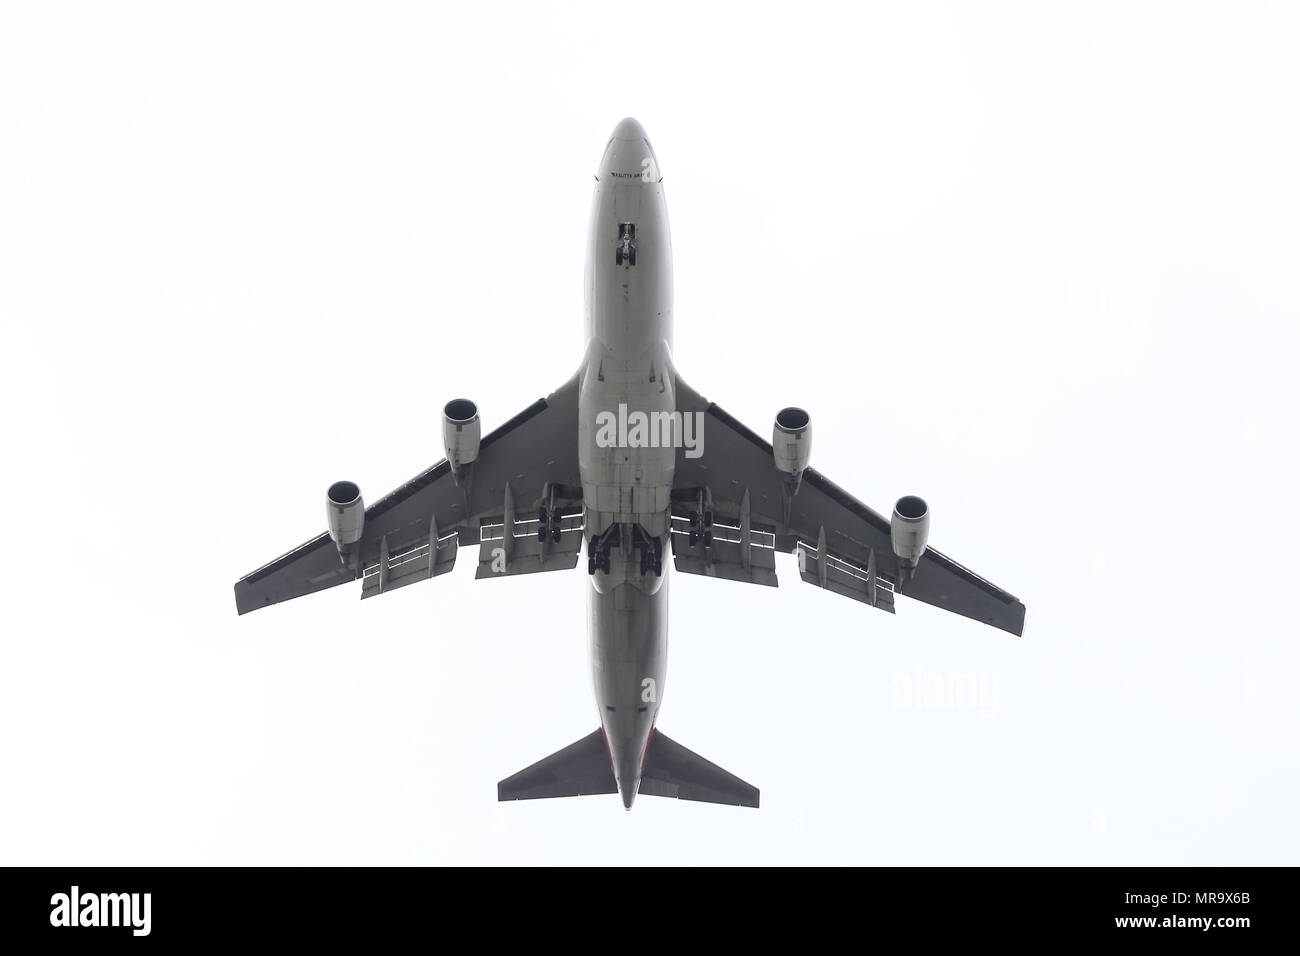 ISTANBUL, TURQUIE - février 04, 2018 : Kalitta Air Boeing 747-400 de l'atterrissage à l'aéroport Ataturk d'Istanbul. Kalitta Air est une compagnie aérienne cargo américain avec 18 Banque D'Images